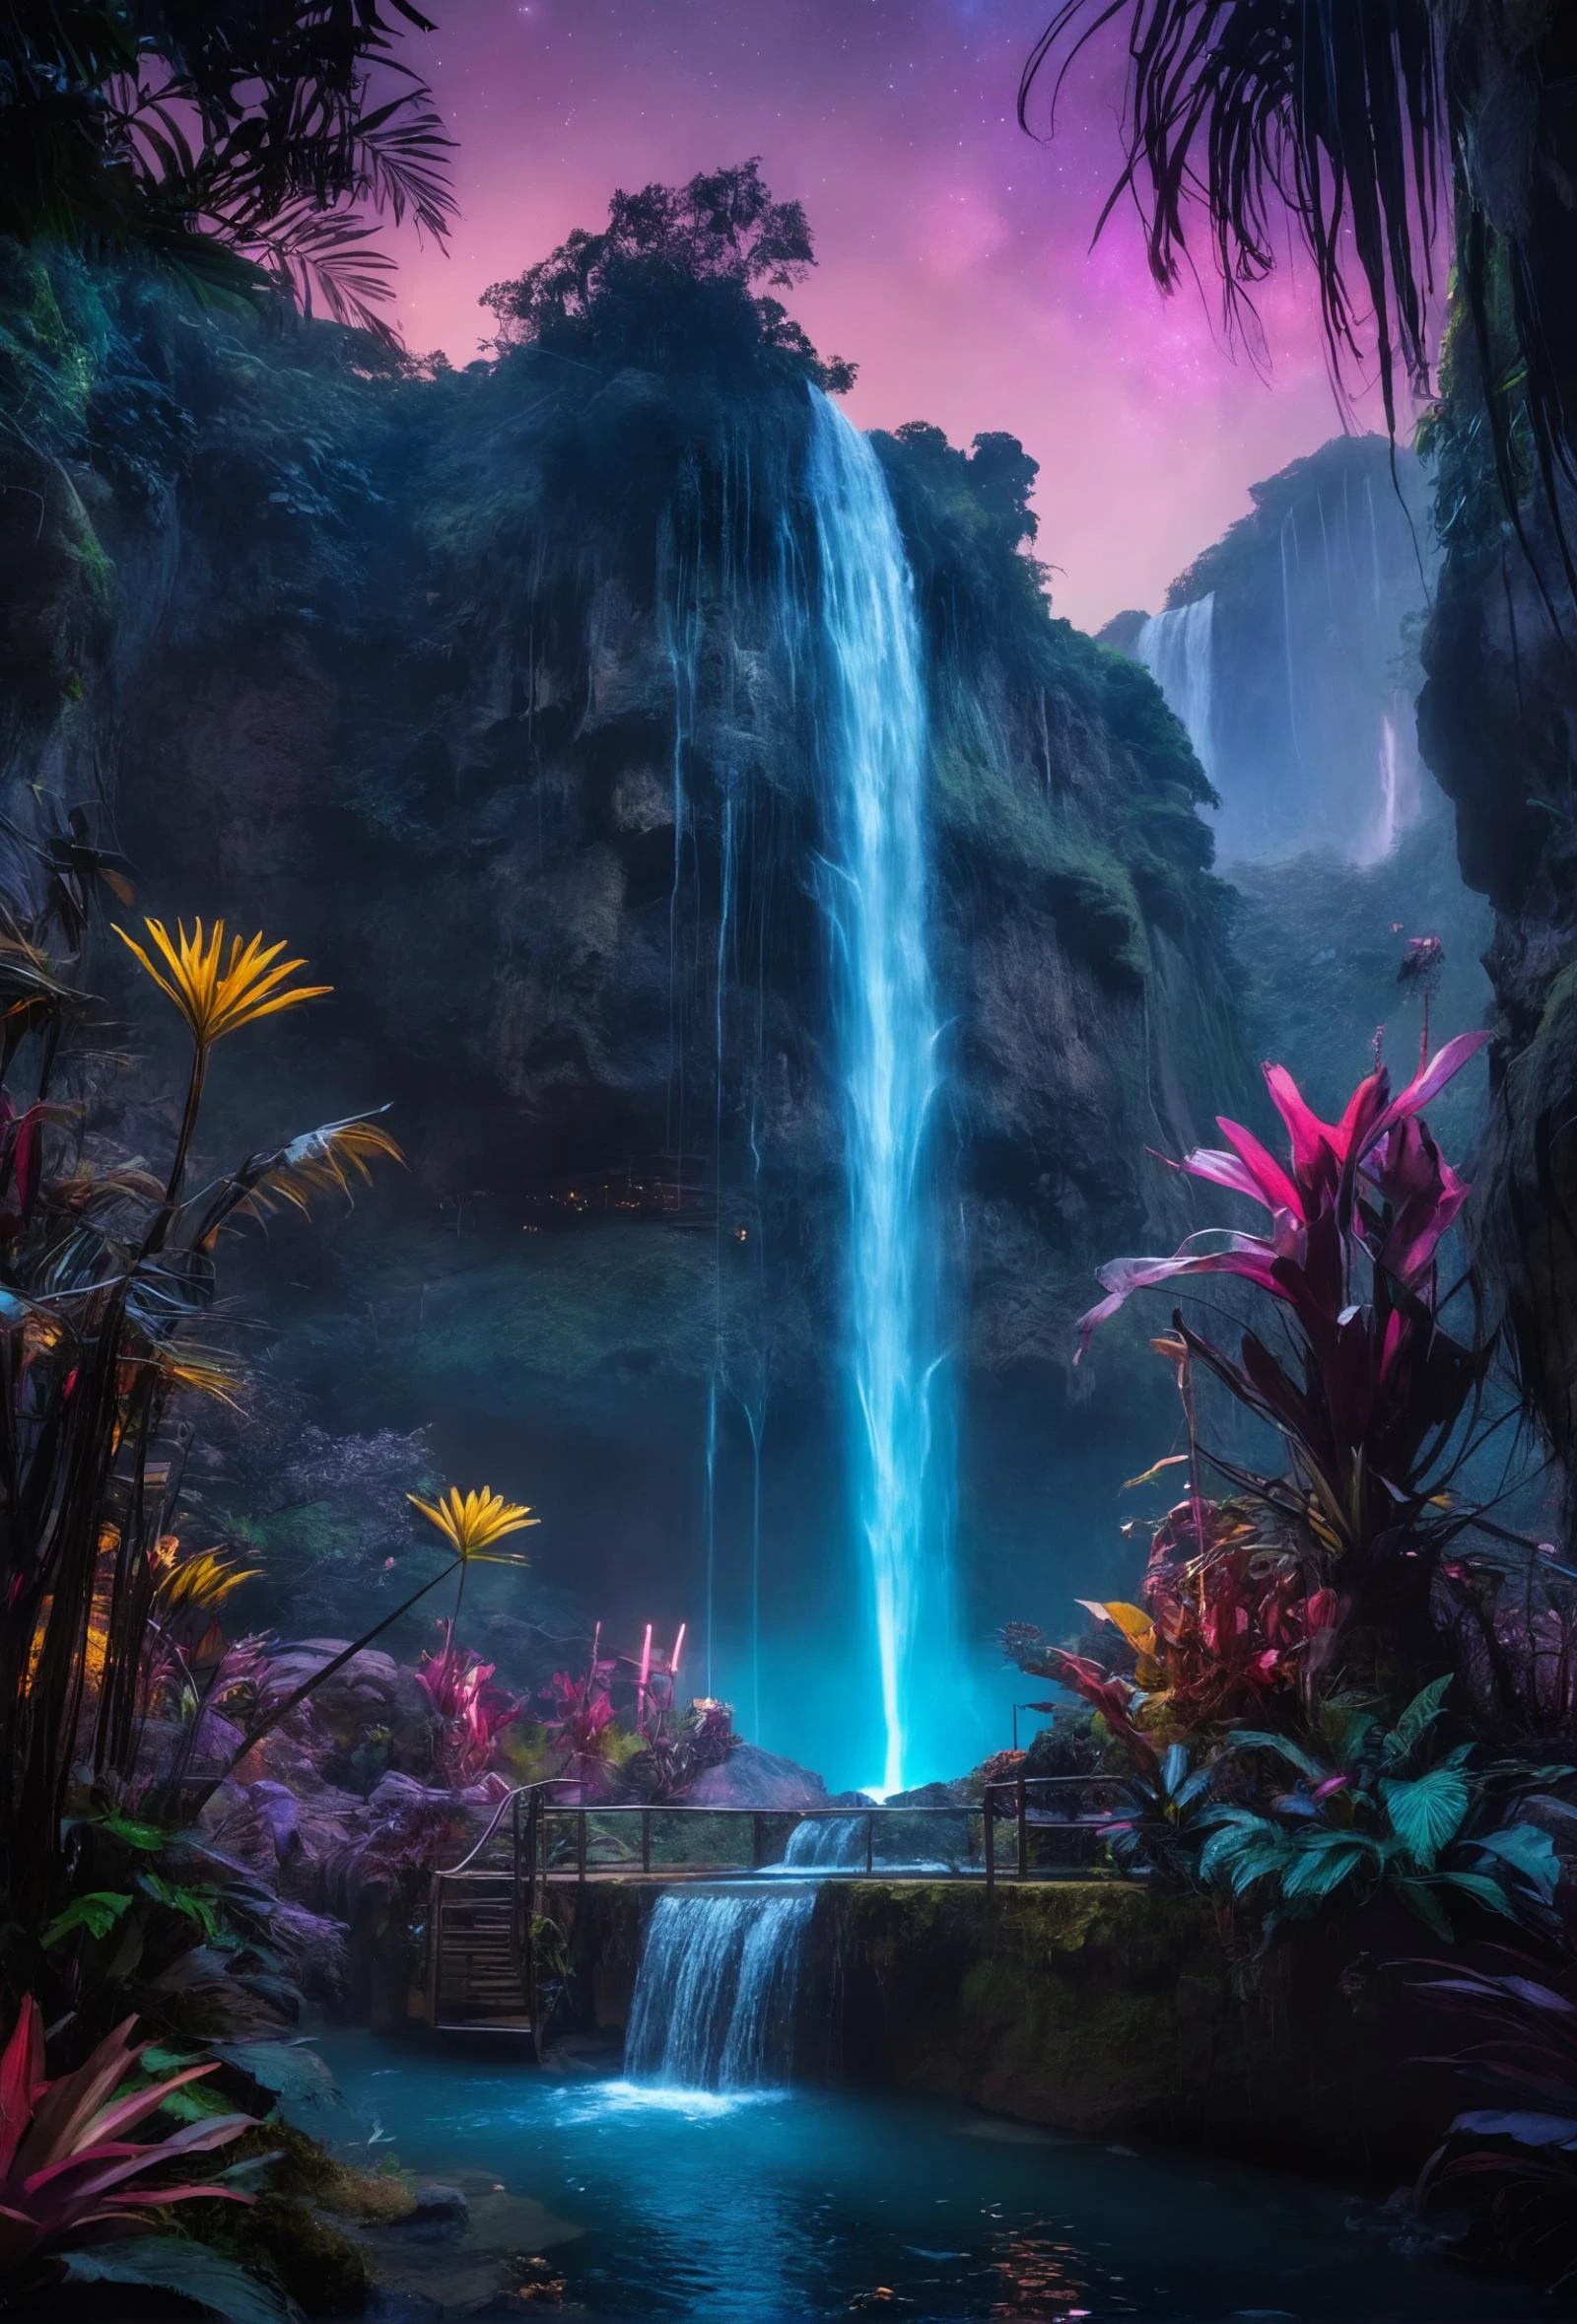 filmisch still eine Welt, in der Natur und Technologie in Harmonie verschmelzen. In diesem futuristischen Neon-Dschungel, Wasserfälle strömen wie flüssiges Licht, Exotische Pflanzen pulsieren mit biolumineszierendem Leben, und schwimmende Plattformen bieten einen Zufluchtsort unter den Sternen. Unter dem Abendhimmel, die Landschaft ist voller leuchtender Blau- und Violetttöne, ein Beweis für die geheimnisvolle Schönheit des Planeten und die hochentwickelten Zivilisationen, die ihn respektieren.â€ . emotional, harmonisch, vignette, 4k Epos detailed, gedreht mit Kodak, 35mm Foto, scharfer Fokus, Hohes Budget, Cinemascope, Launisch, Epos, wunderschön, Filmkorn, körnig, eine Welt, in der Natur und Technologie in Harmonie verschmelzen. In diesem futuristischen Neon-Dschungel, Wasserfälle strömen wie flüssiges Licht, Exotische Pflanzen pulsieren mit biolumineszierendem Leben, und schwimmende Plattformen bieten einen Zufluchtsort unter den Sternen. Unter dem Abendhimmel, die Landschaft ist voller leuchtender Blau- und Violetttöne, ein Beweis für die geheimnisvolle Schönheit des Planeten und die hochentwickelten Zivilisationen, die ihn respektieren.â€, gemütlich, Komplementärfarben, romantisch, perfekte Komposition, abenteuerlich, filmisch, satte, tiefe Farbe, wunderschön detailliert kompliziert atemberaubend großartig klassisch zeitgenössisch feine Details, Ambient dramatisch atemberaubend professionell voll komponiert, best, Epos, spektakulär, einzigartig, brillant, künstlerisch, Rein, sehr inspirierend, süßer Hintergrund, inspirierend, Magische Atmosphäre, kreativ, Positiv, schön, fabelhaft, elegant